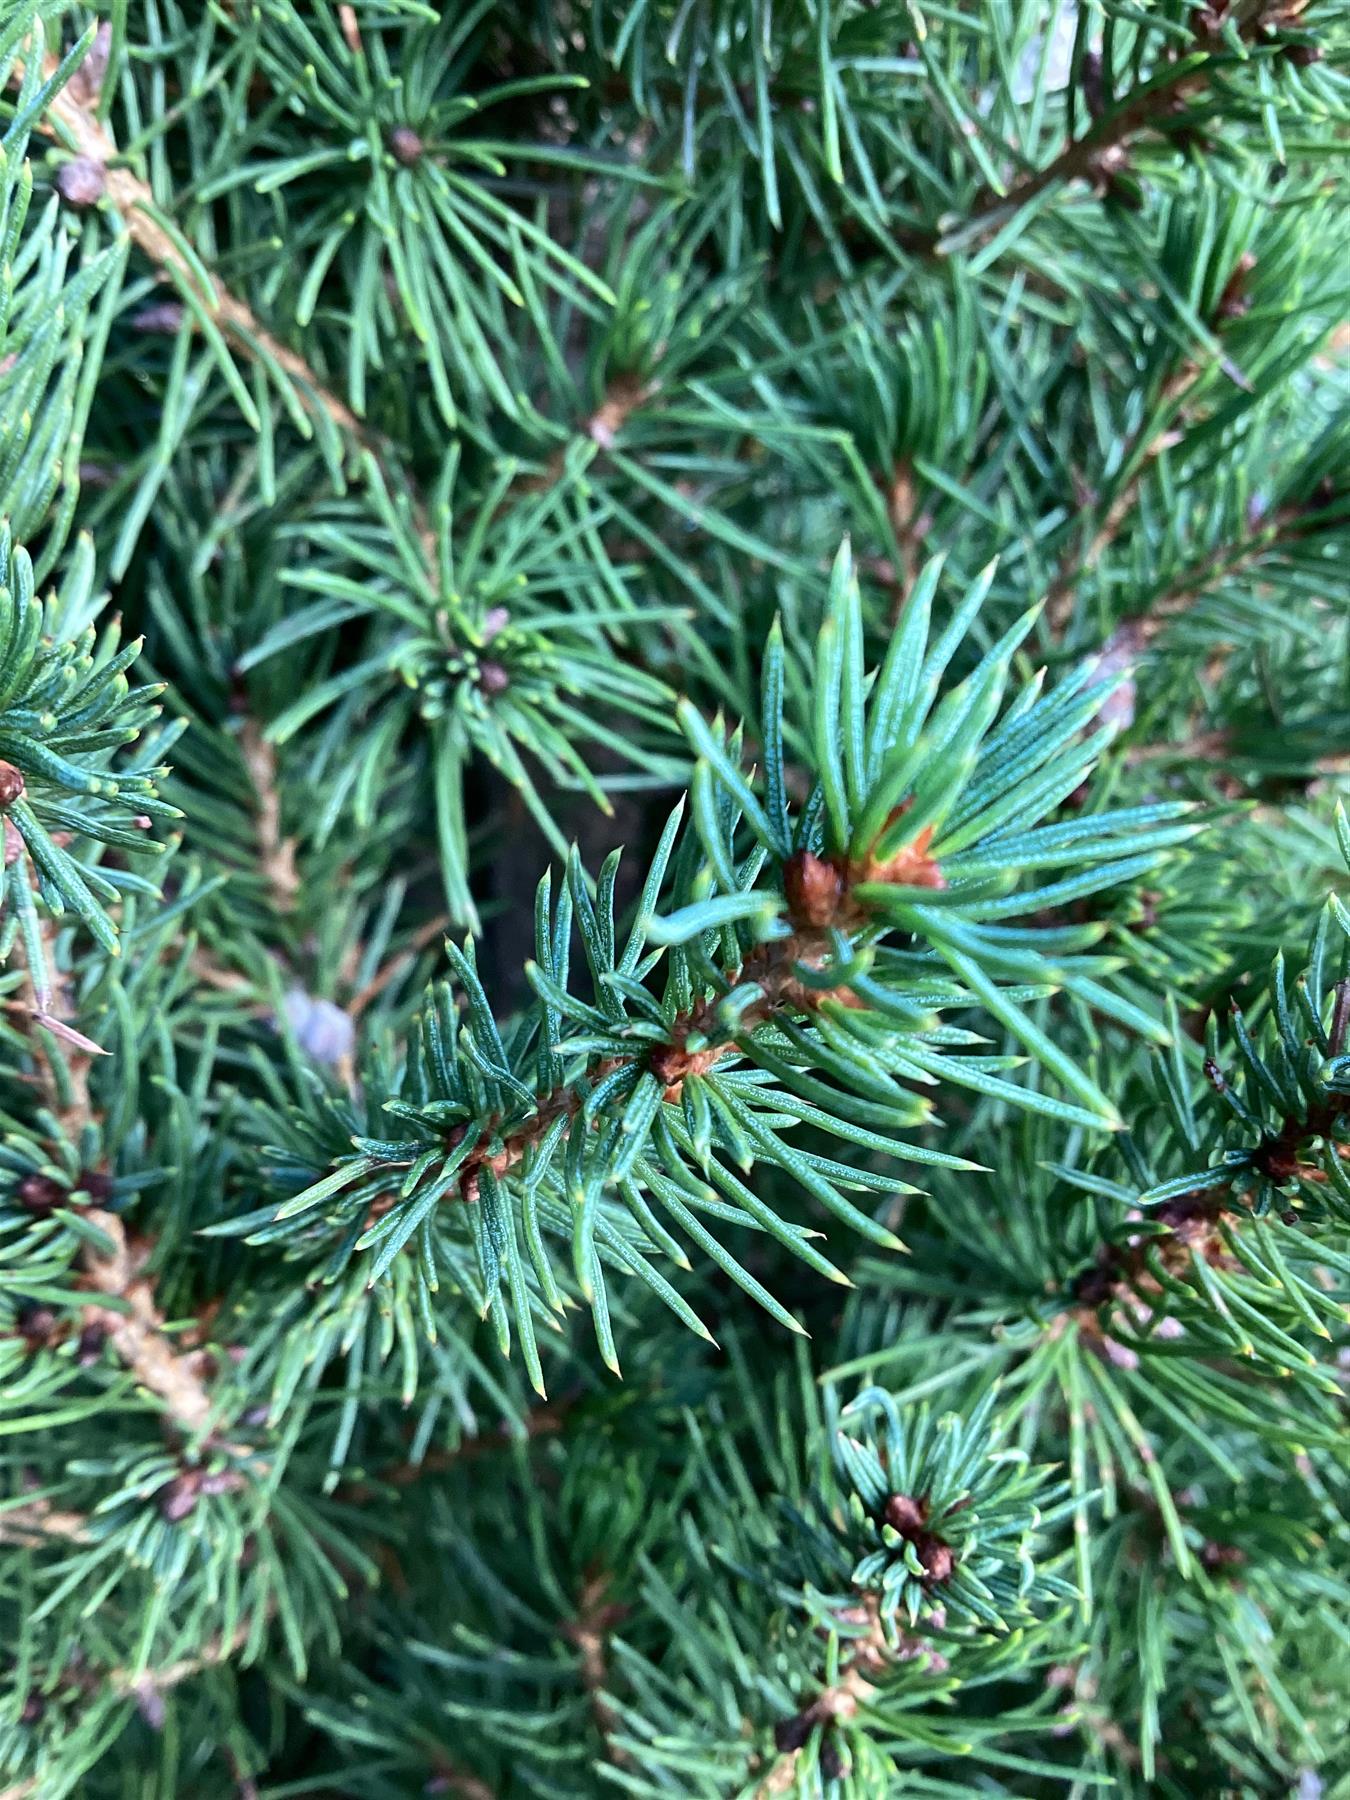 Picea glauca 'Albertiana Conica' | Alberta spruce - Cone - Height 130-150cm - 25lt